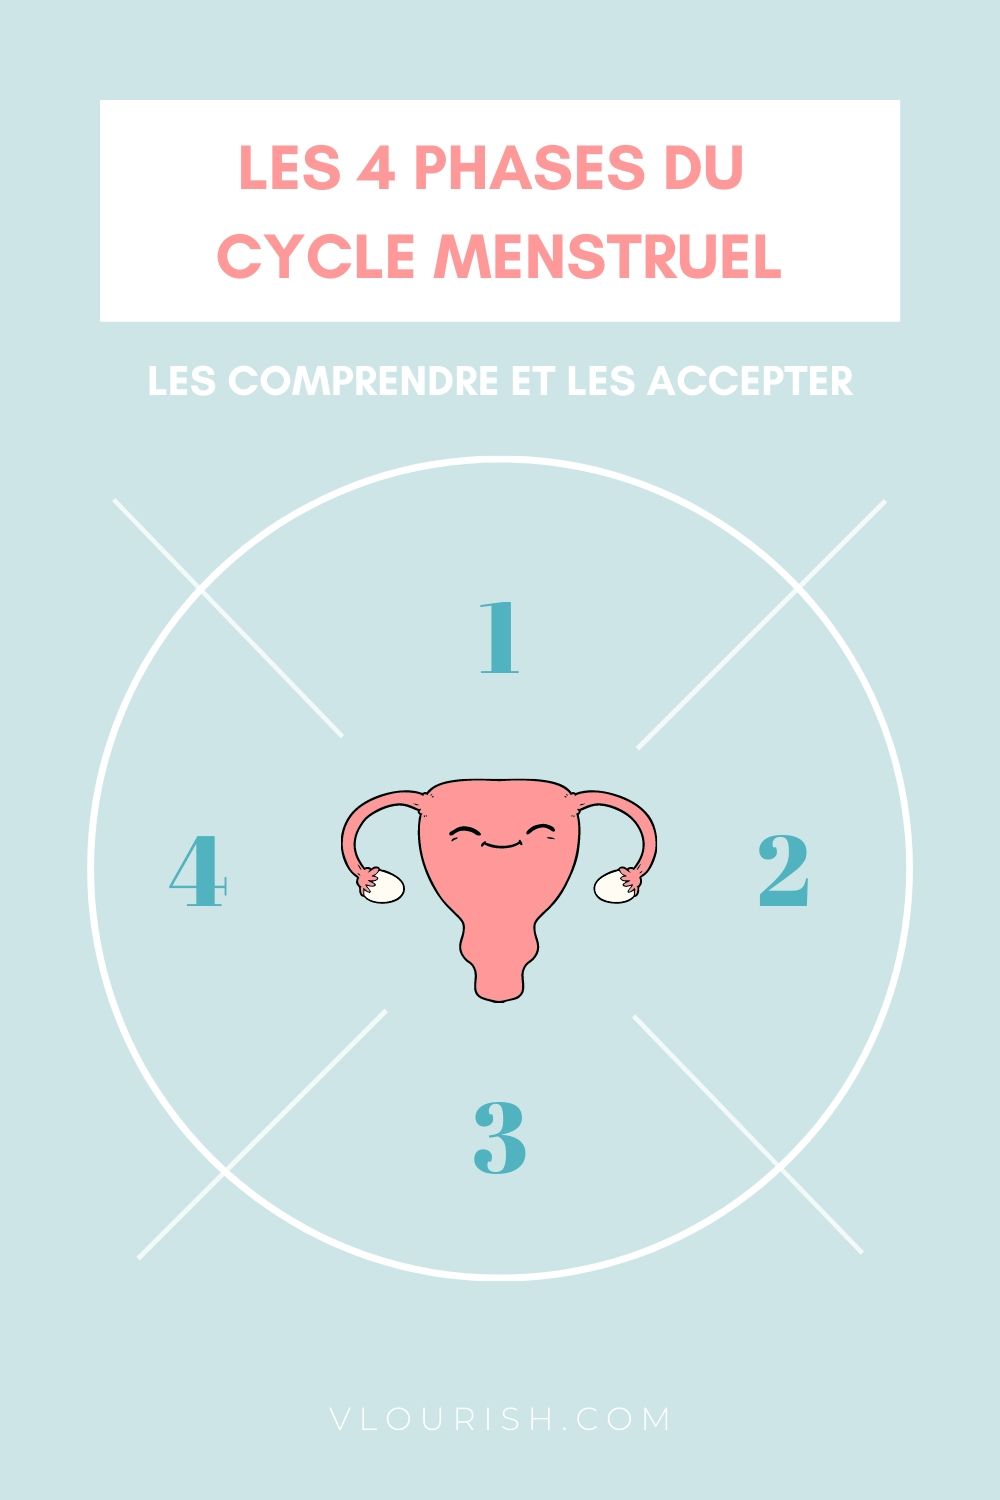 4 Phases du Cycle Menstruel : Les comprendre et les accepter